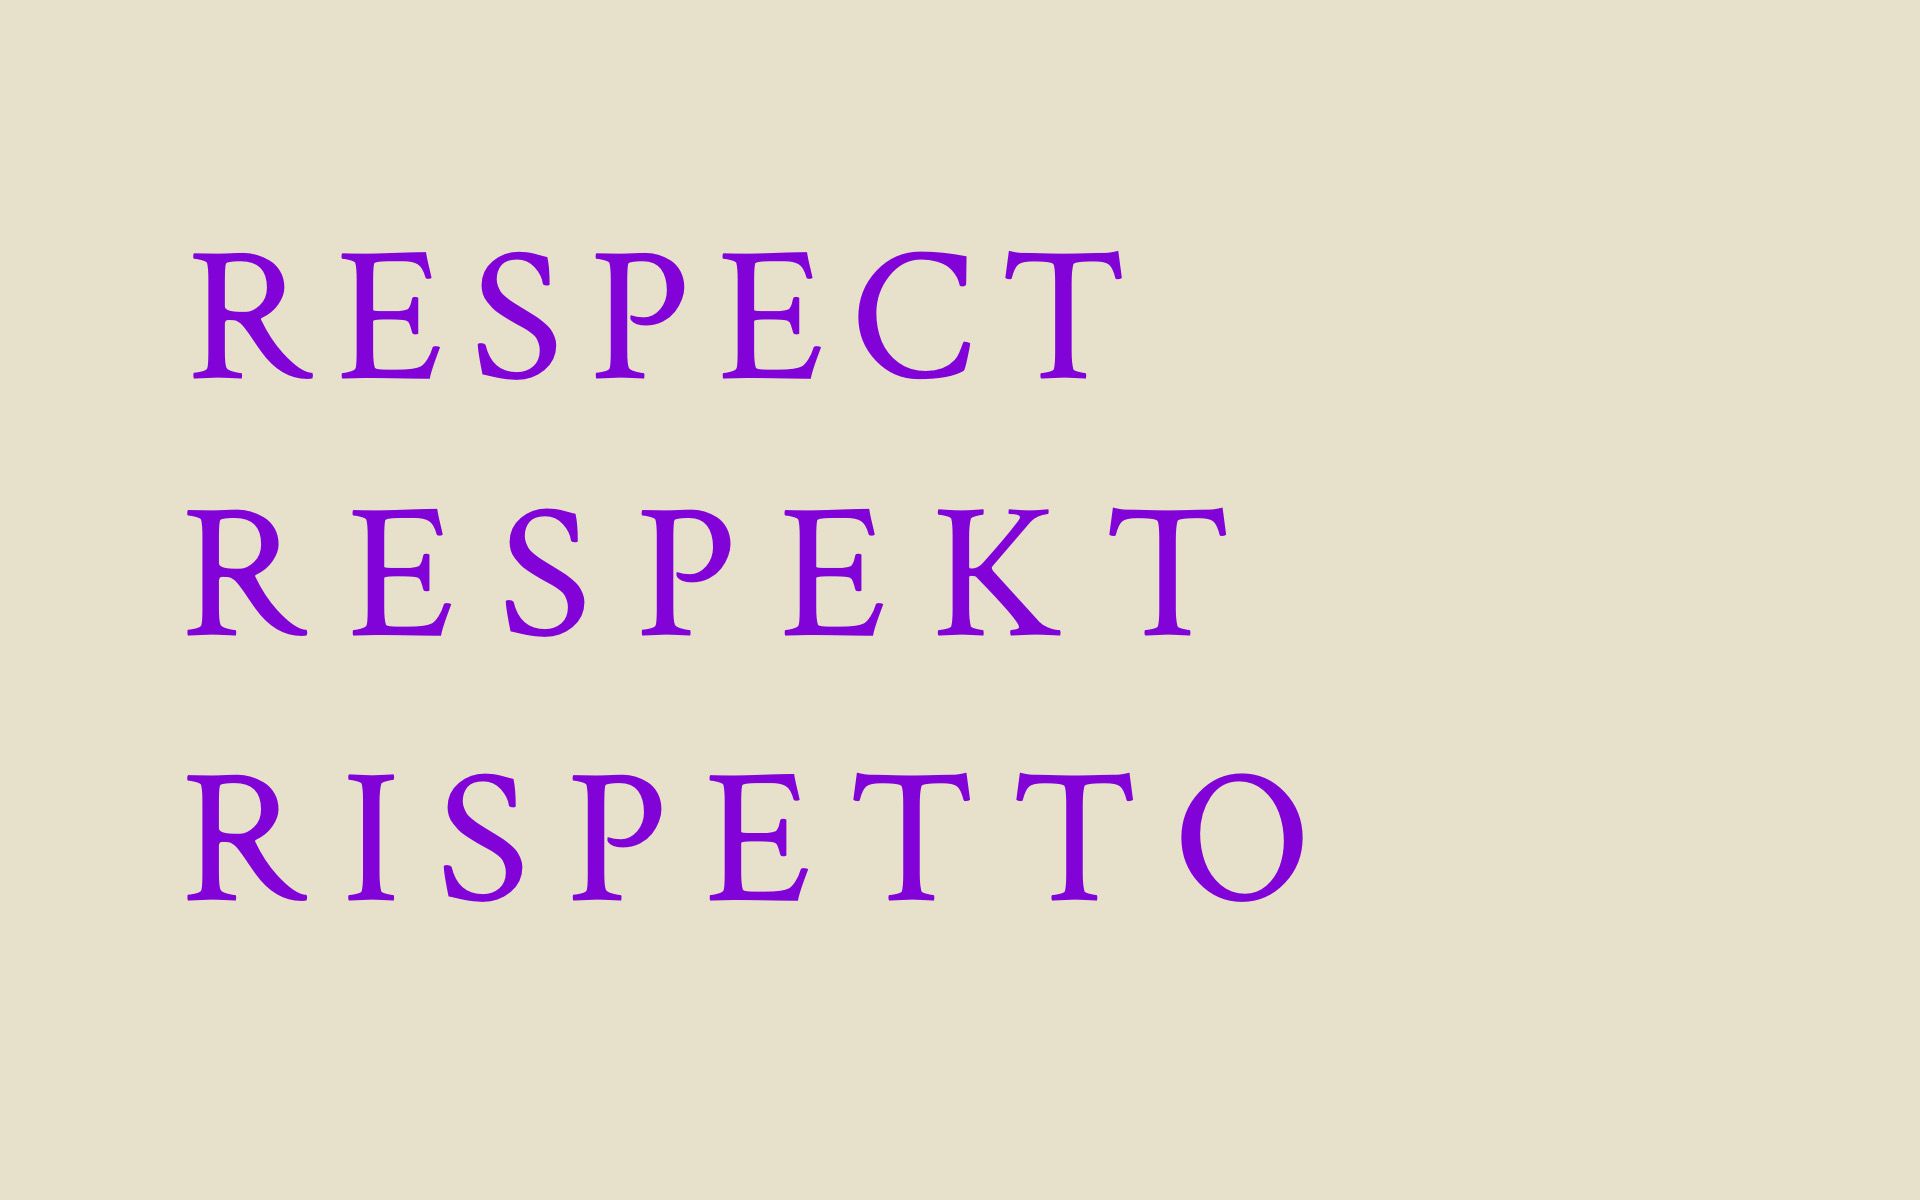 Weisse Fläche, auf welcher der Wert «Respekt» auf Deutsch in der Mitte steht. Darüber steht die französische Übersetzung «Respecte». Darunter steht die italienische Übersetzung «Rispetto».